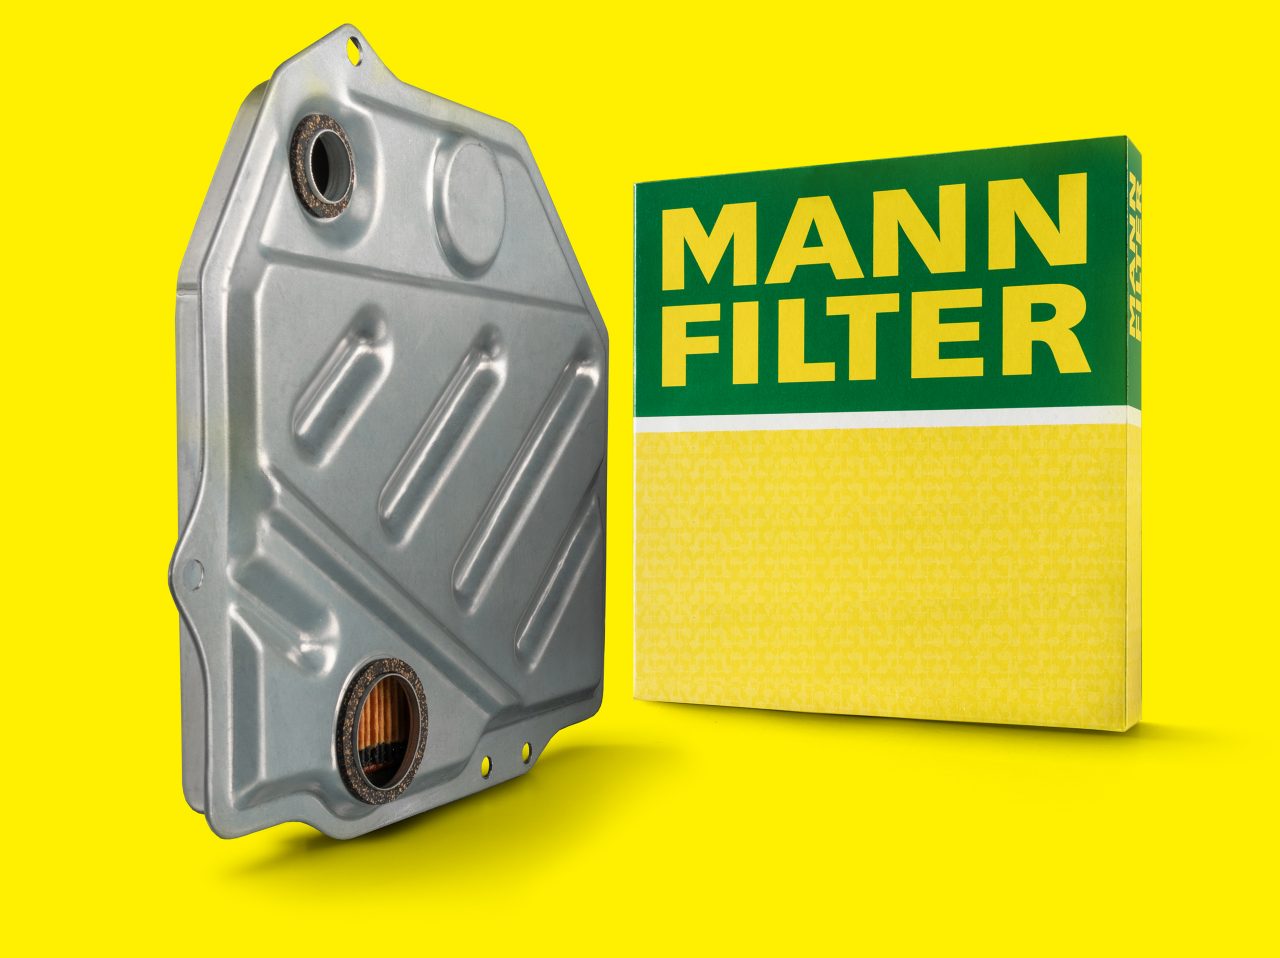 MANN-FILTER Getriebeölfiltern schützen die empfindlichen Getriebekomponenten vor Verschleiß